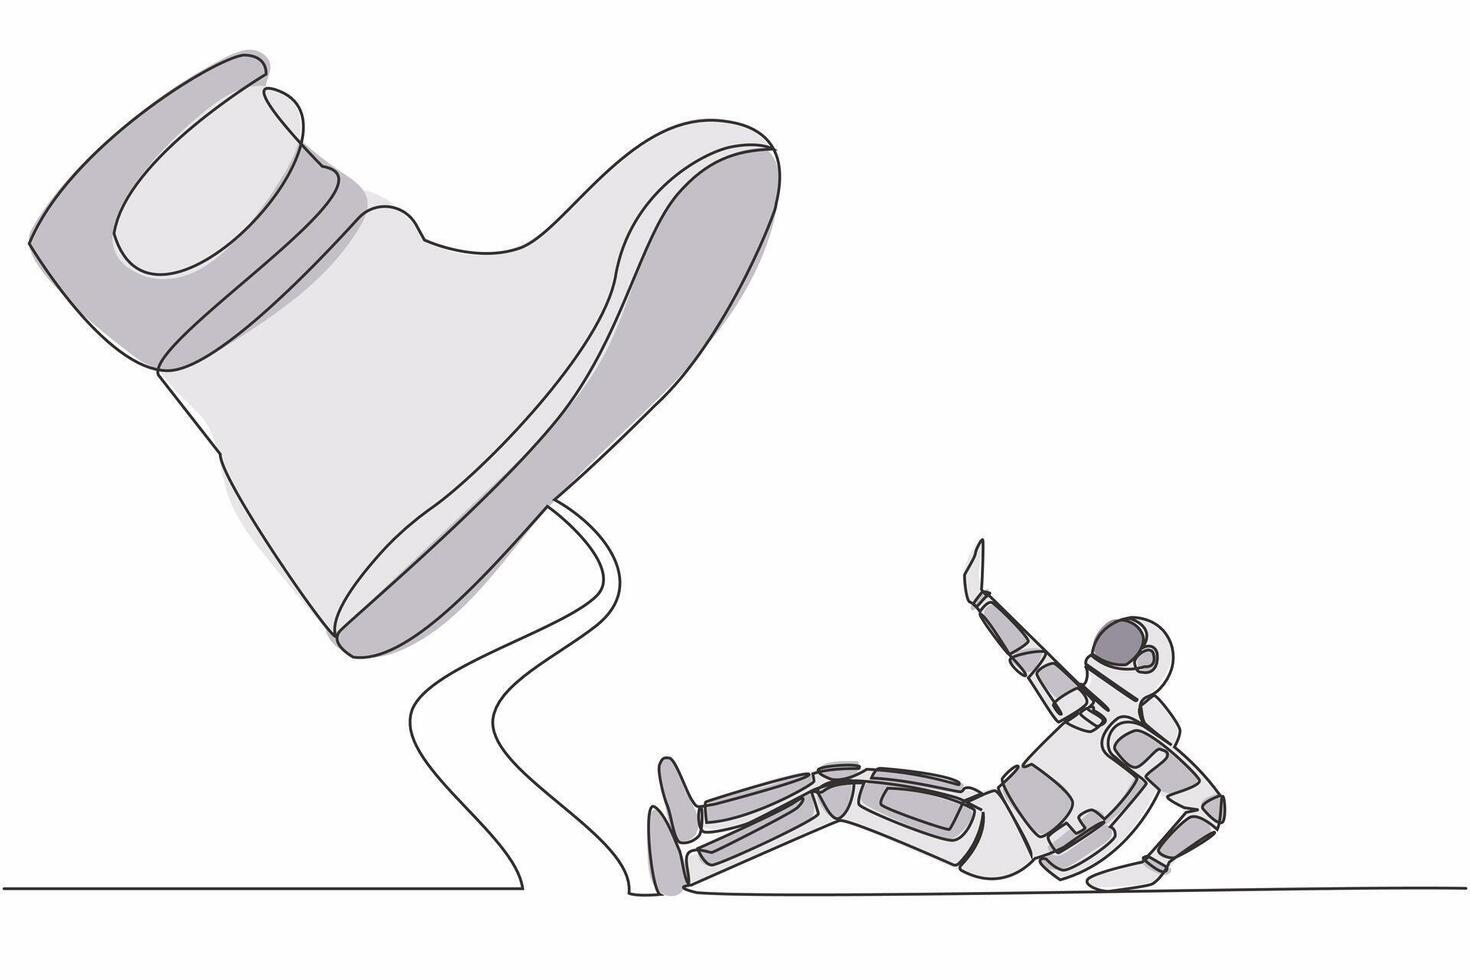 Single kontinuierlich Linie Zeichnung von jung Astronaut unter Riese Fuß im Mond Oberfläche. groß Boss Fuß im Schuh gehen zu zerquetschen Wissenschaft. Kosmonaut tief Raum. einer Linie zeichnen Design Vektor Grafik Illustration